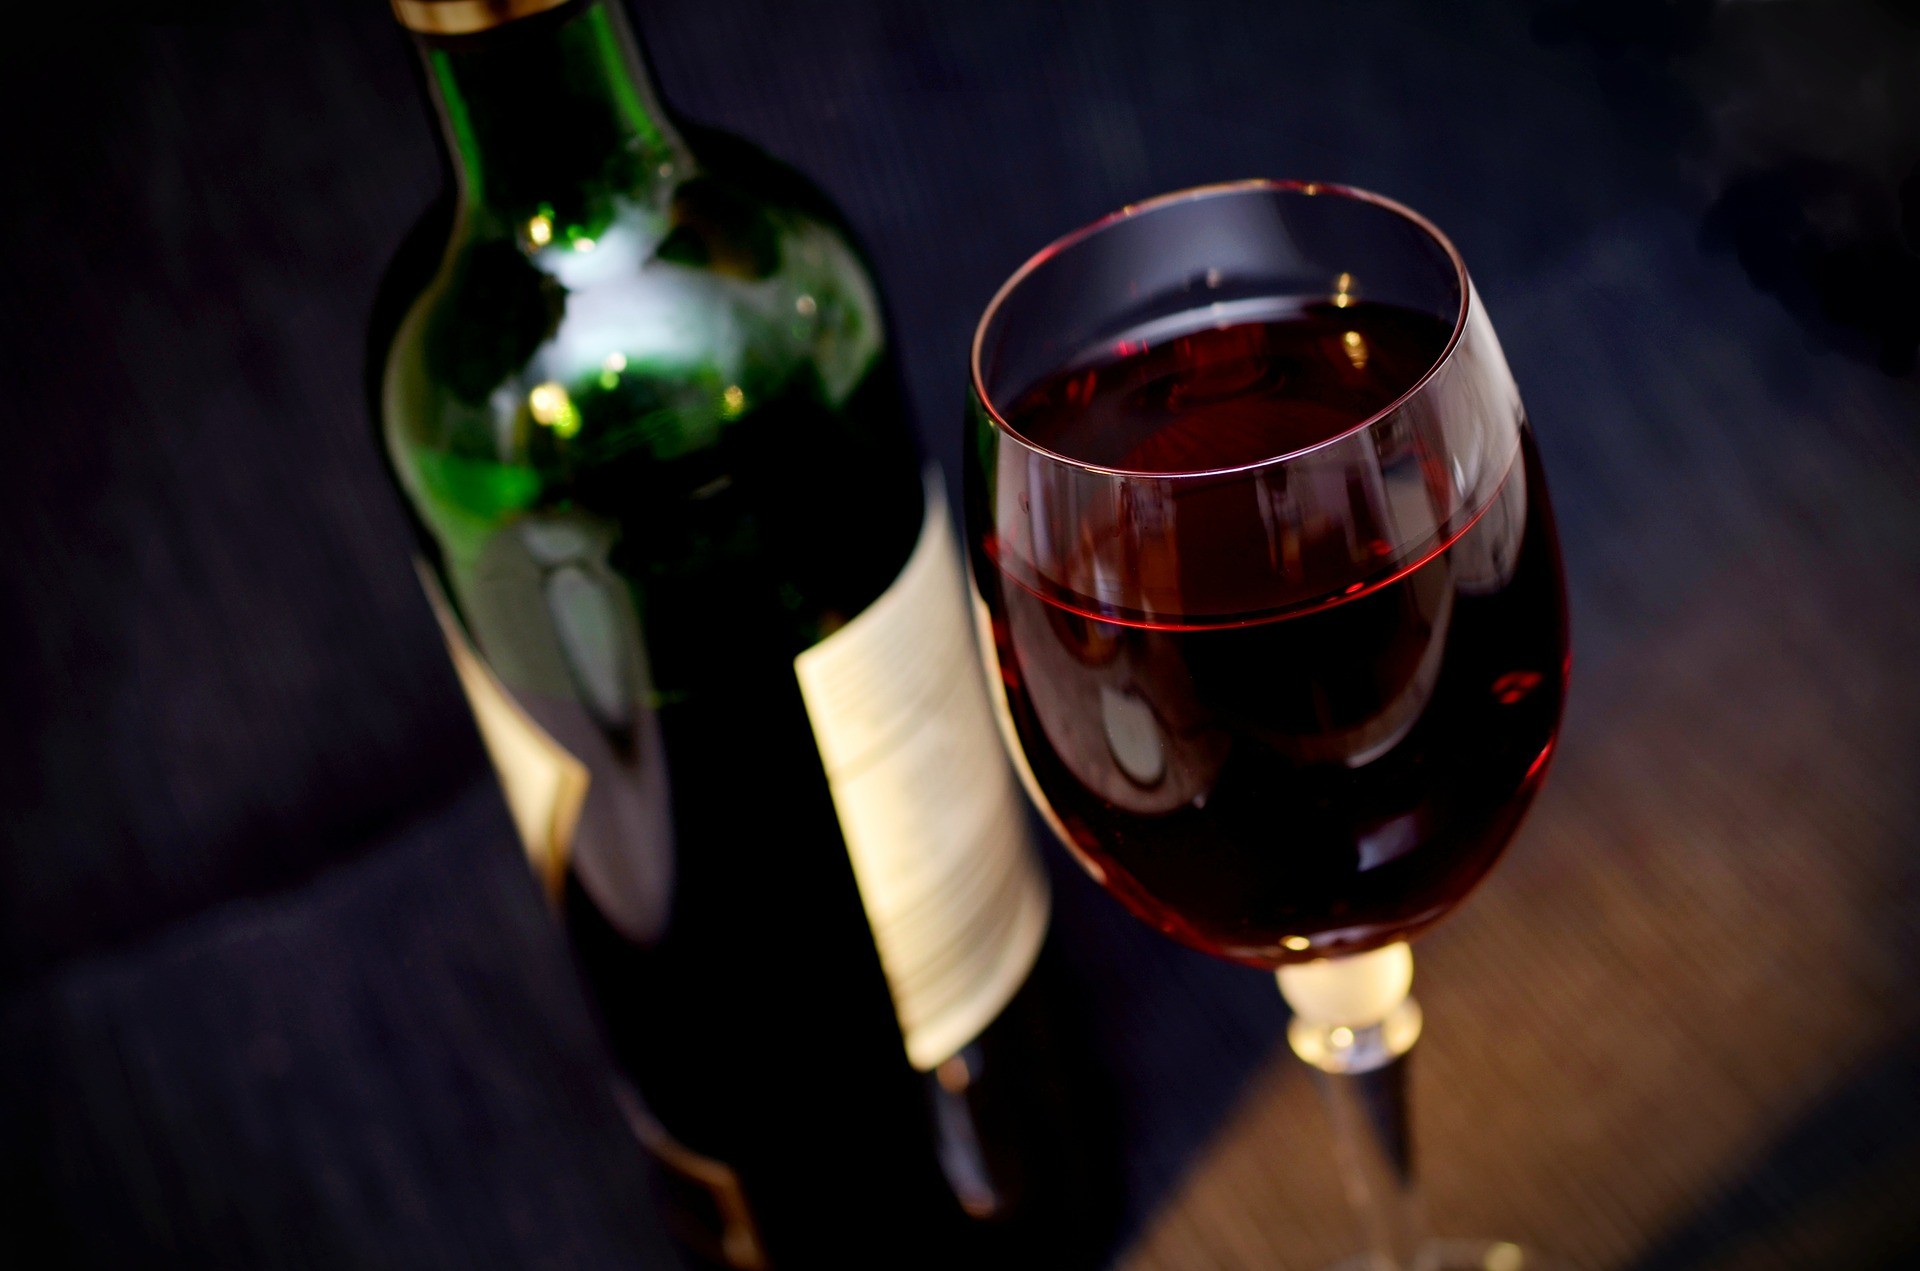 Vinho está entre as bebidas alcoólicas mais falsificadas (Foto: Pixabay)